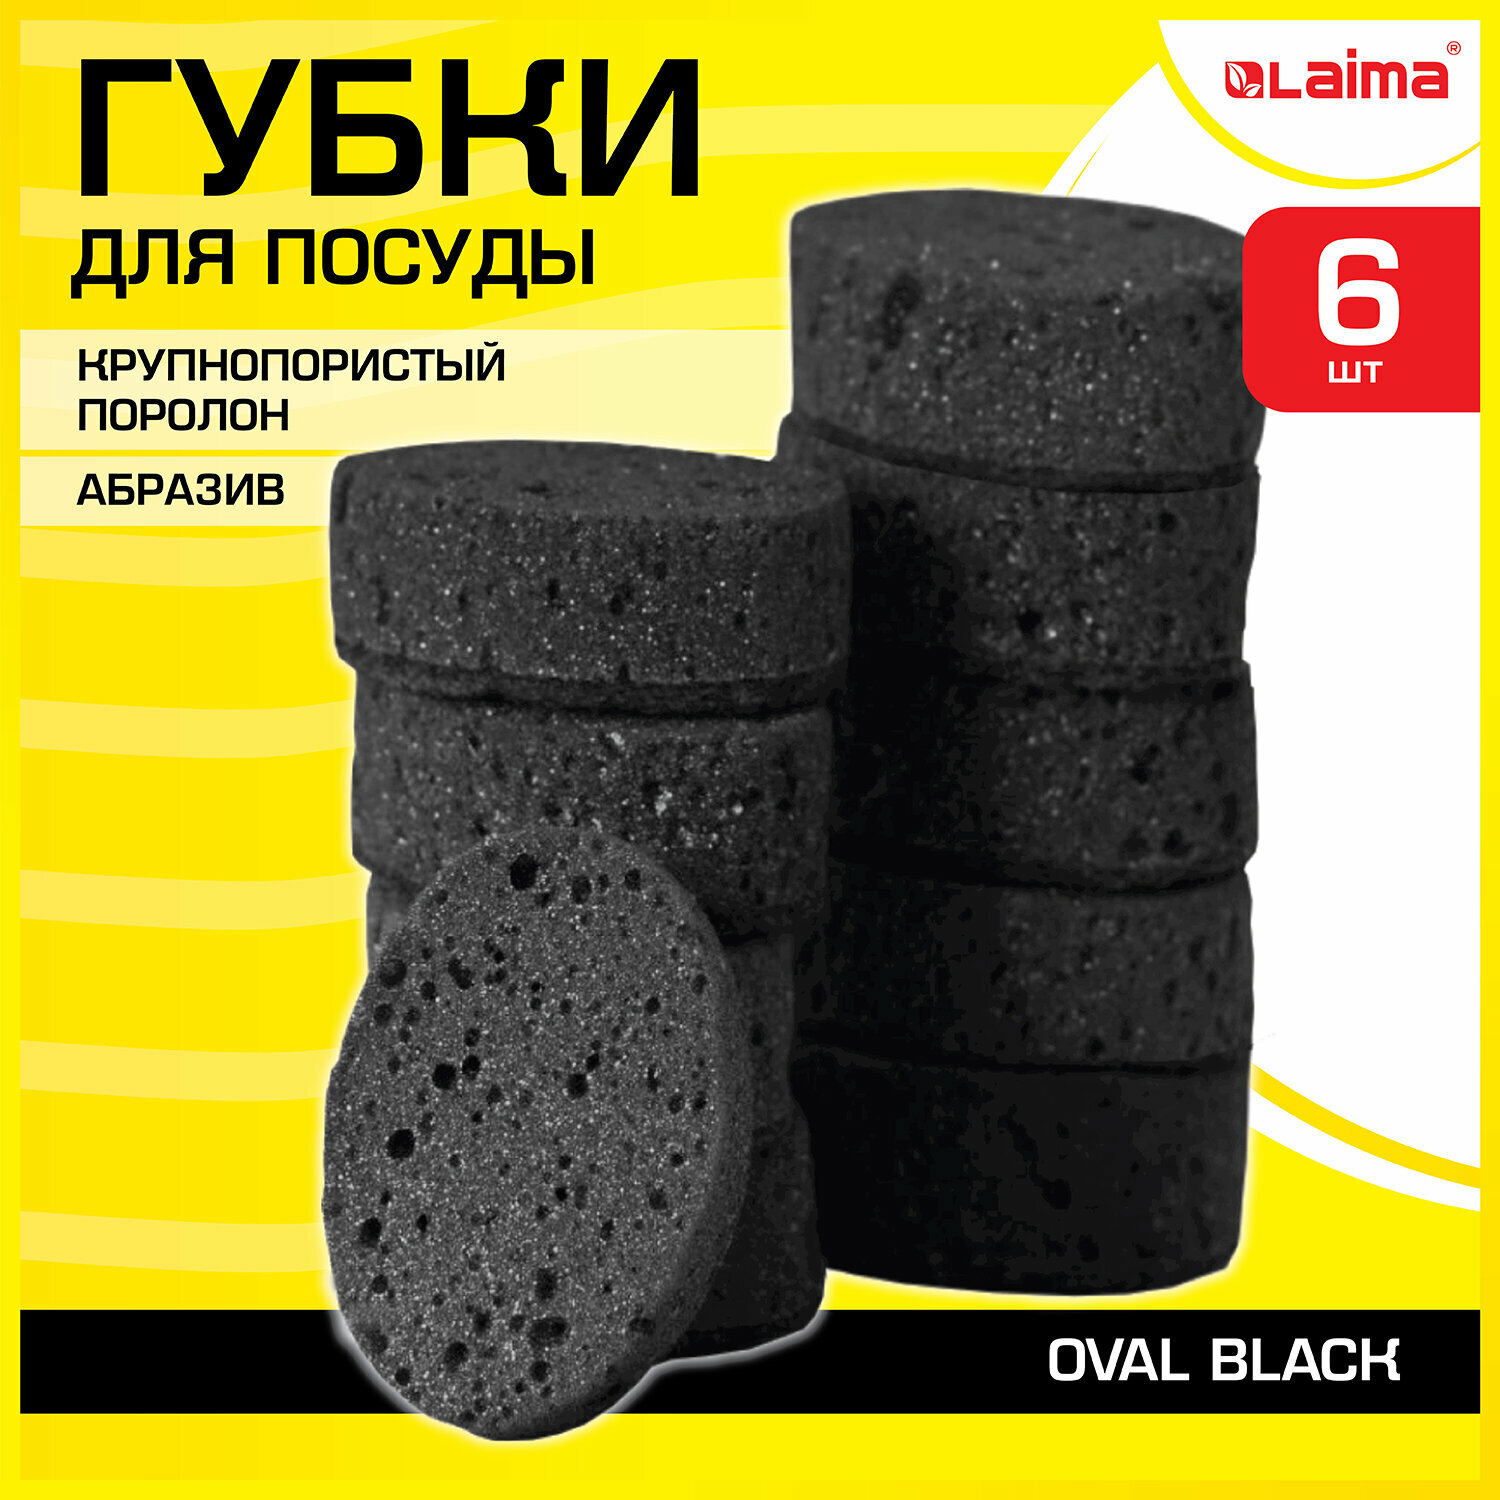 Губки для посуды OVAL BLACK 95х65х35 мм комплект 6 шт крупнопористый поролон/абразив LAIMA 608649